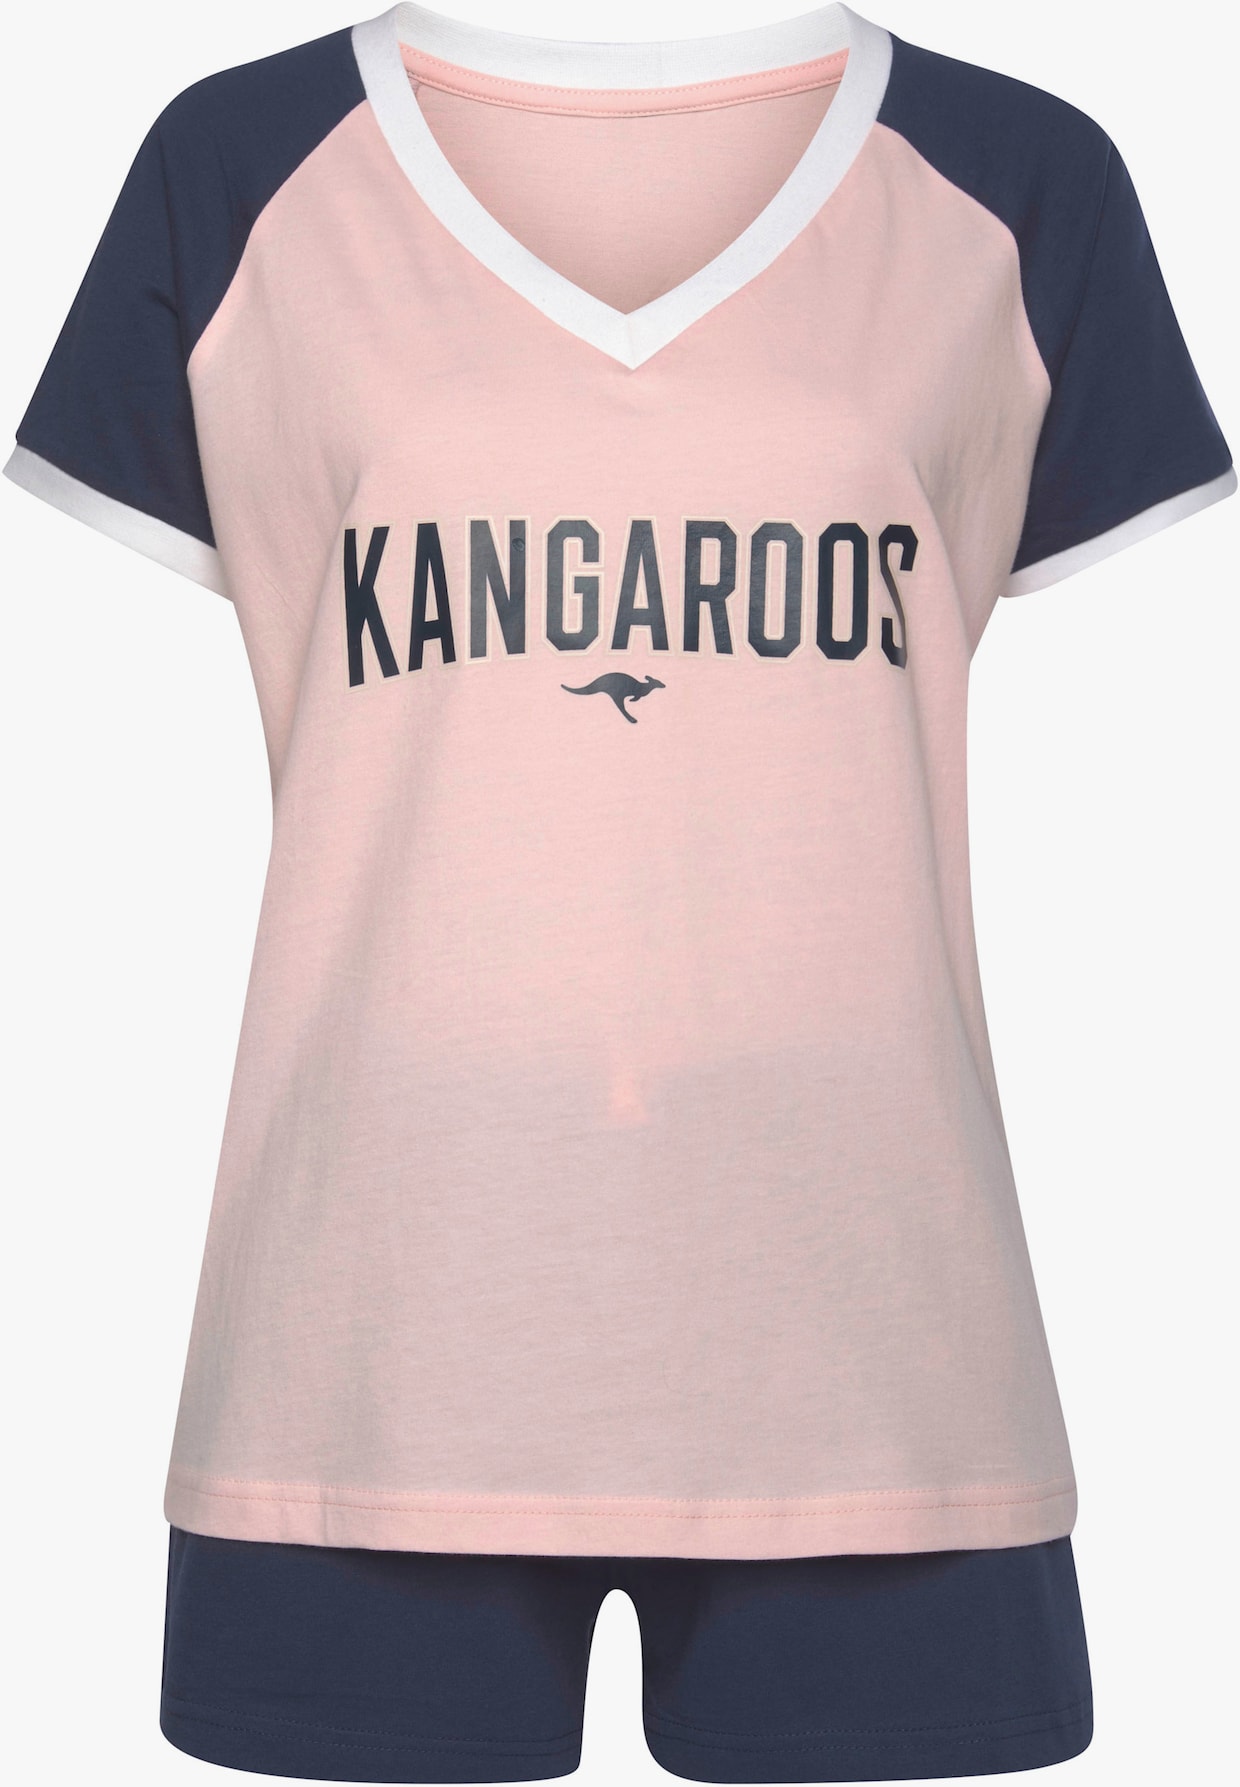 KangaROOS shortama - roze/donkerblauw